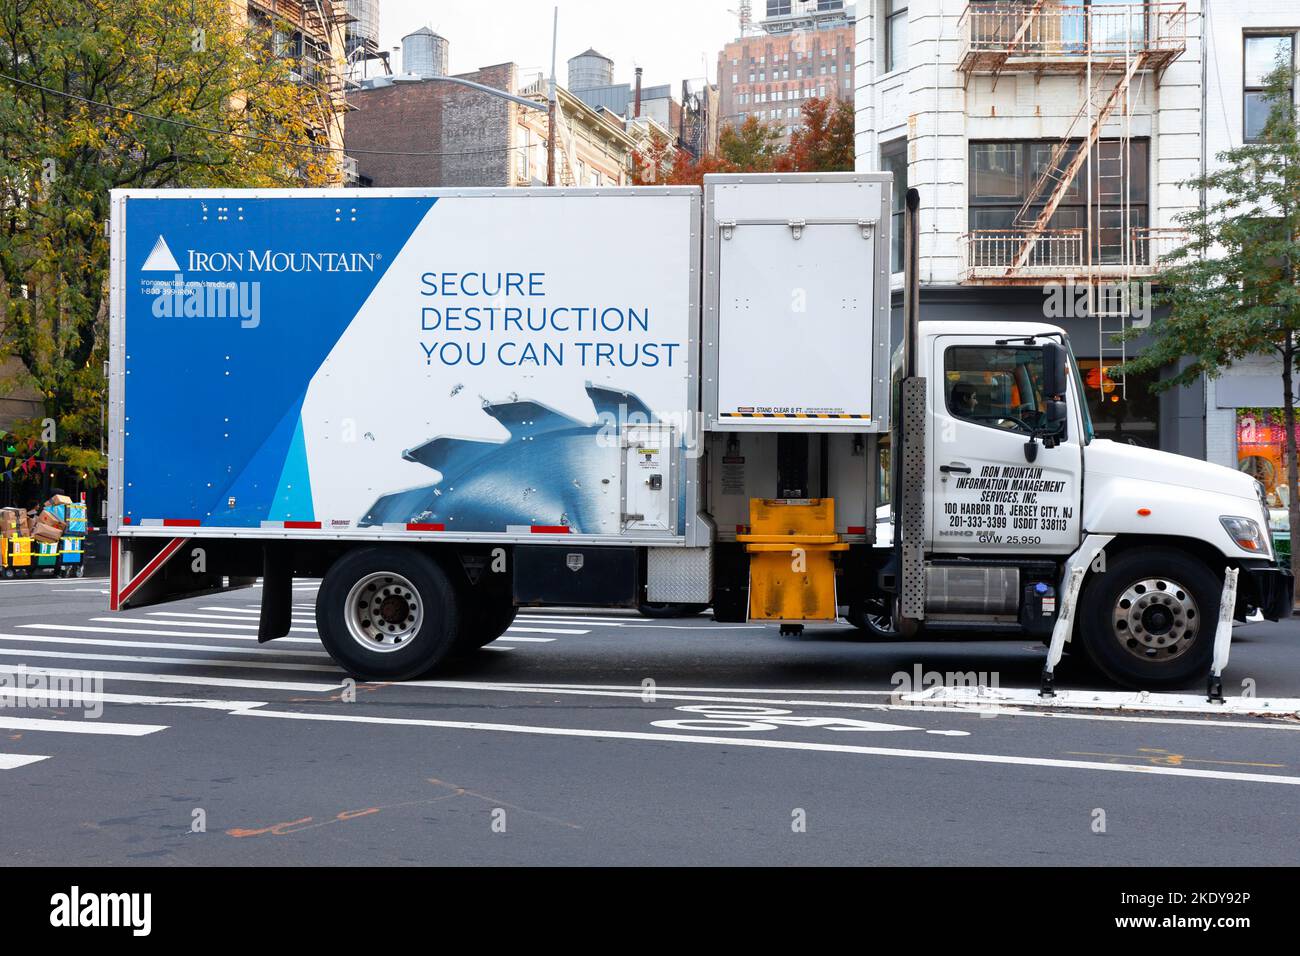 Una camioneta para triturar papel Iron Mountain en la ciudad de Nueva York. Iron Mountain es una empresa de gestión de datos con una instalación de almacenamiento en frío en una mina de piedra caliza. Foto de stock